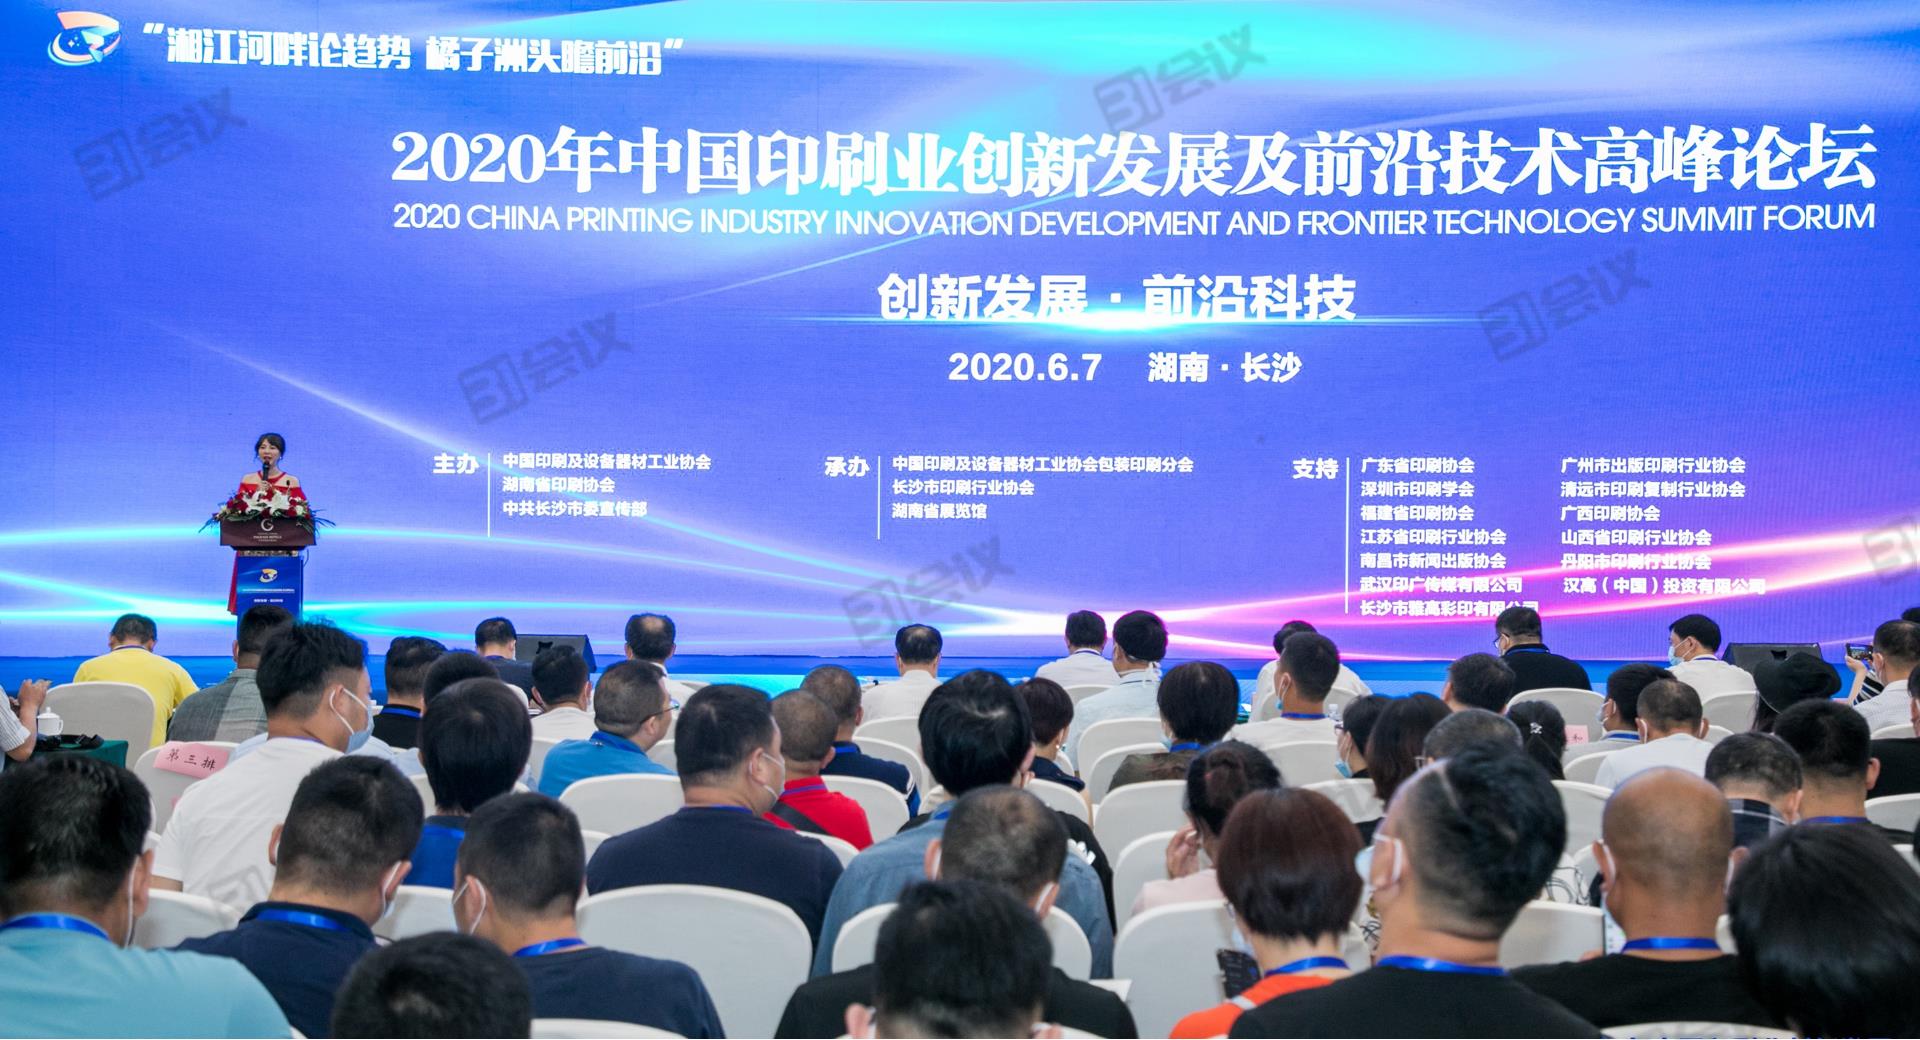 2020年中國印刷業創新發展及前沿技術高峰論壇